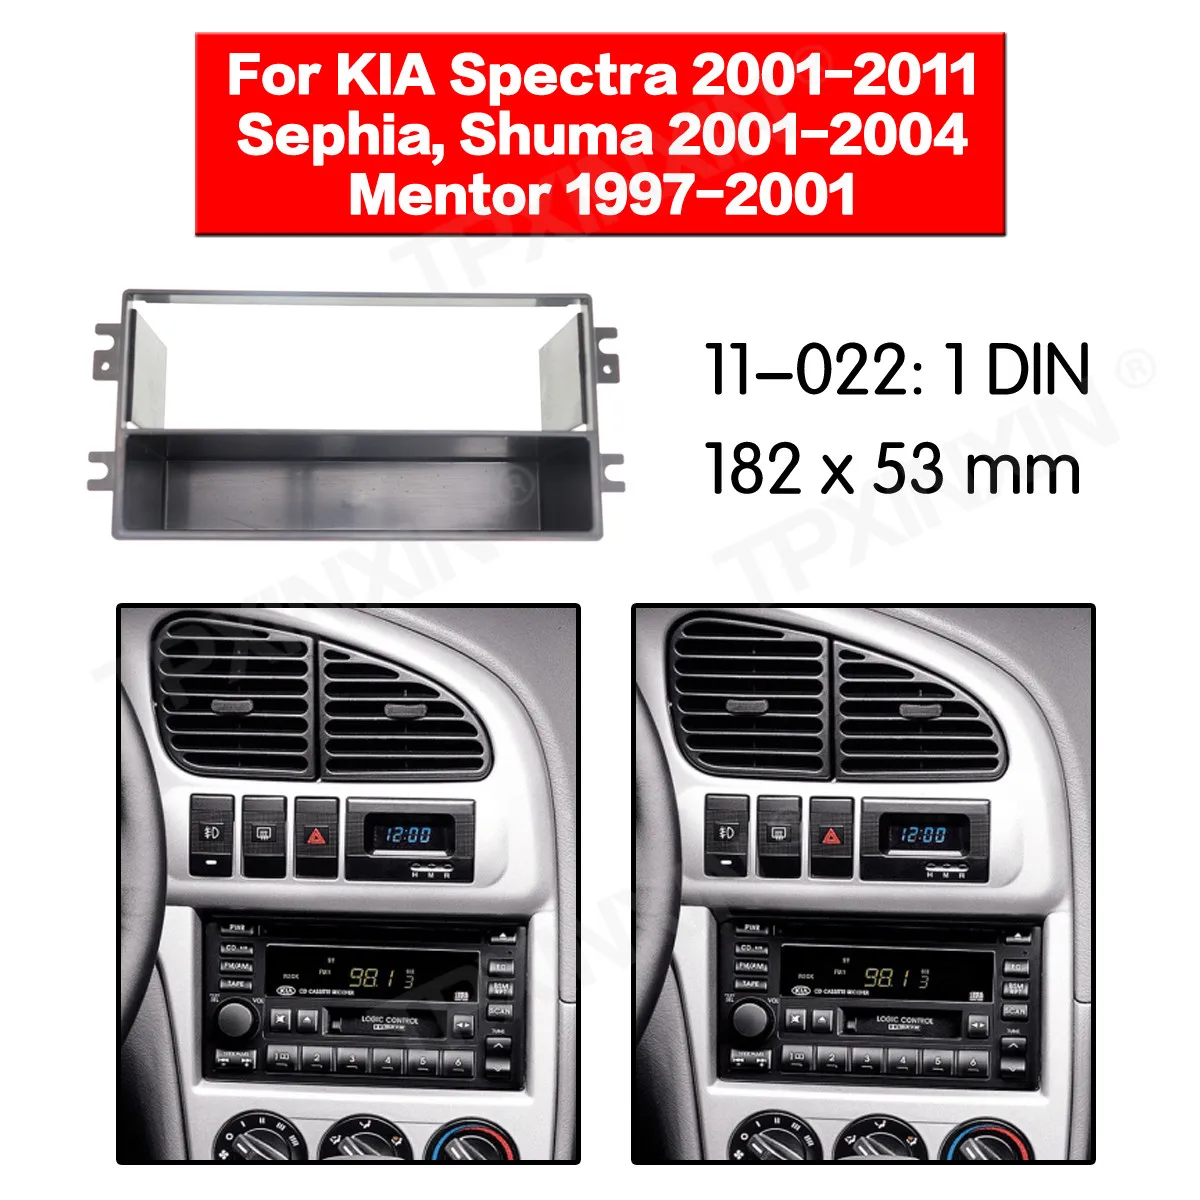 11-022 autórádió Keret Panel KIA Spektrumok 2001-2011 Rádió Sztereó Fascia Panel Keret Adapter Fitting Szett 0